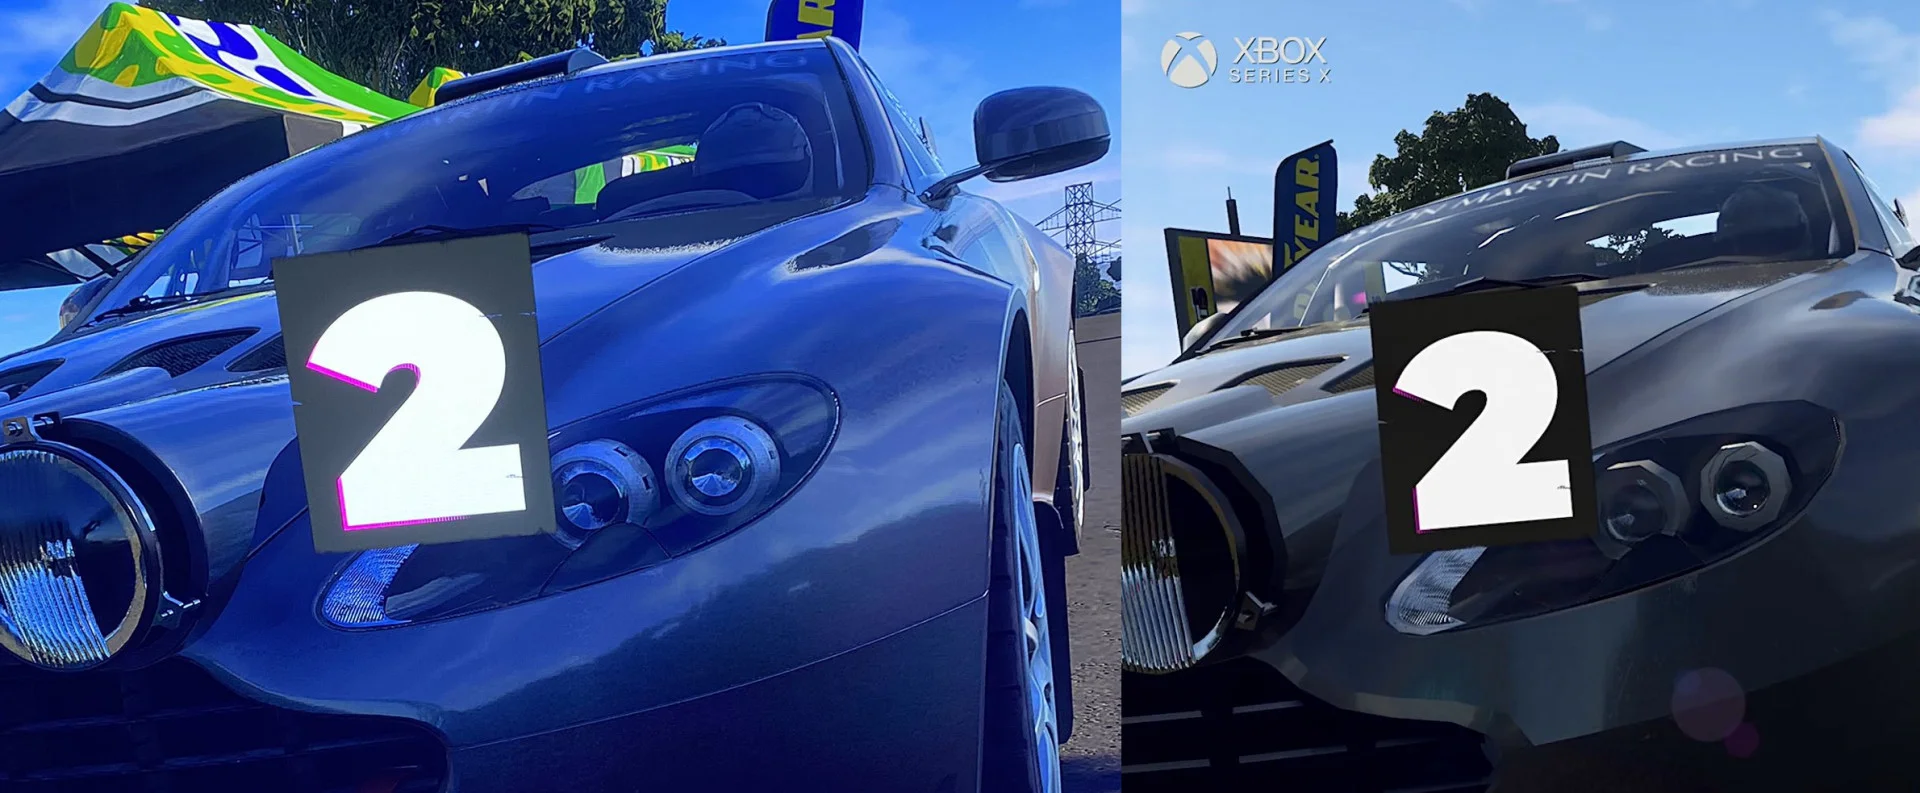 Графику DIRT 5 на Xbox Series X исправили — теперь гонка выглядит как и на PS5 - фото 1